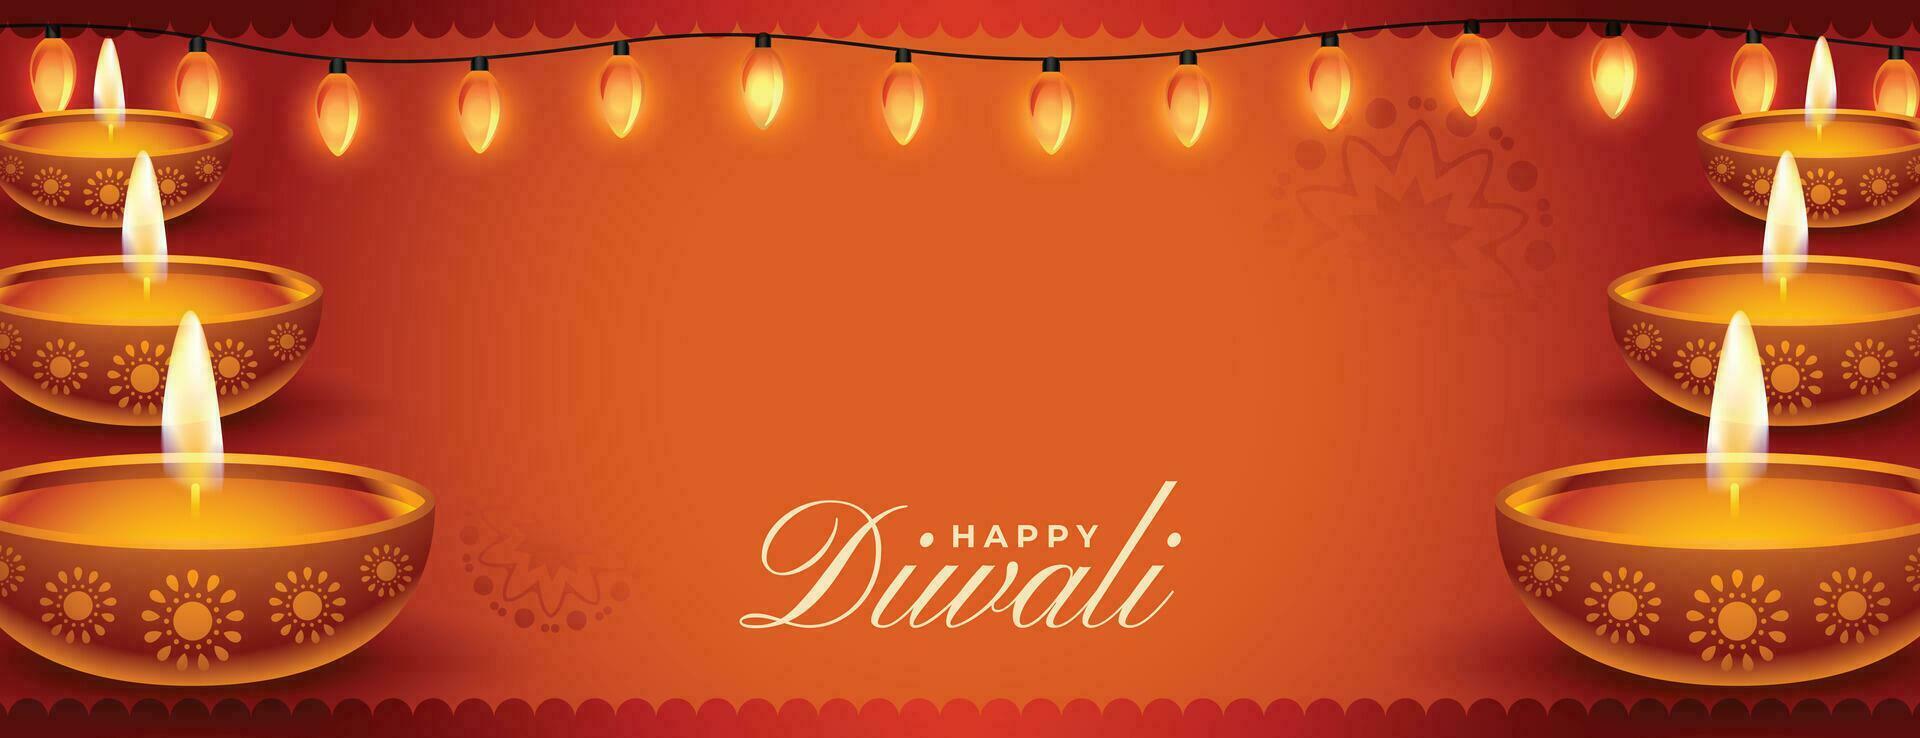 réaliste content diwali Festival bannière avec lumières et diya décoration vecteur